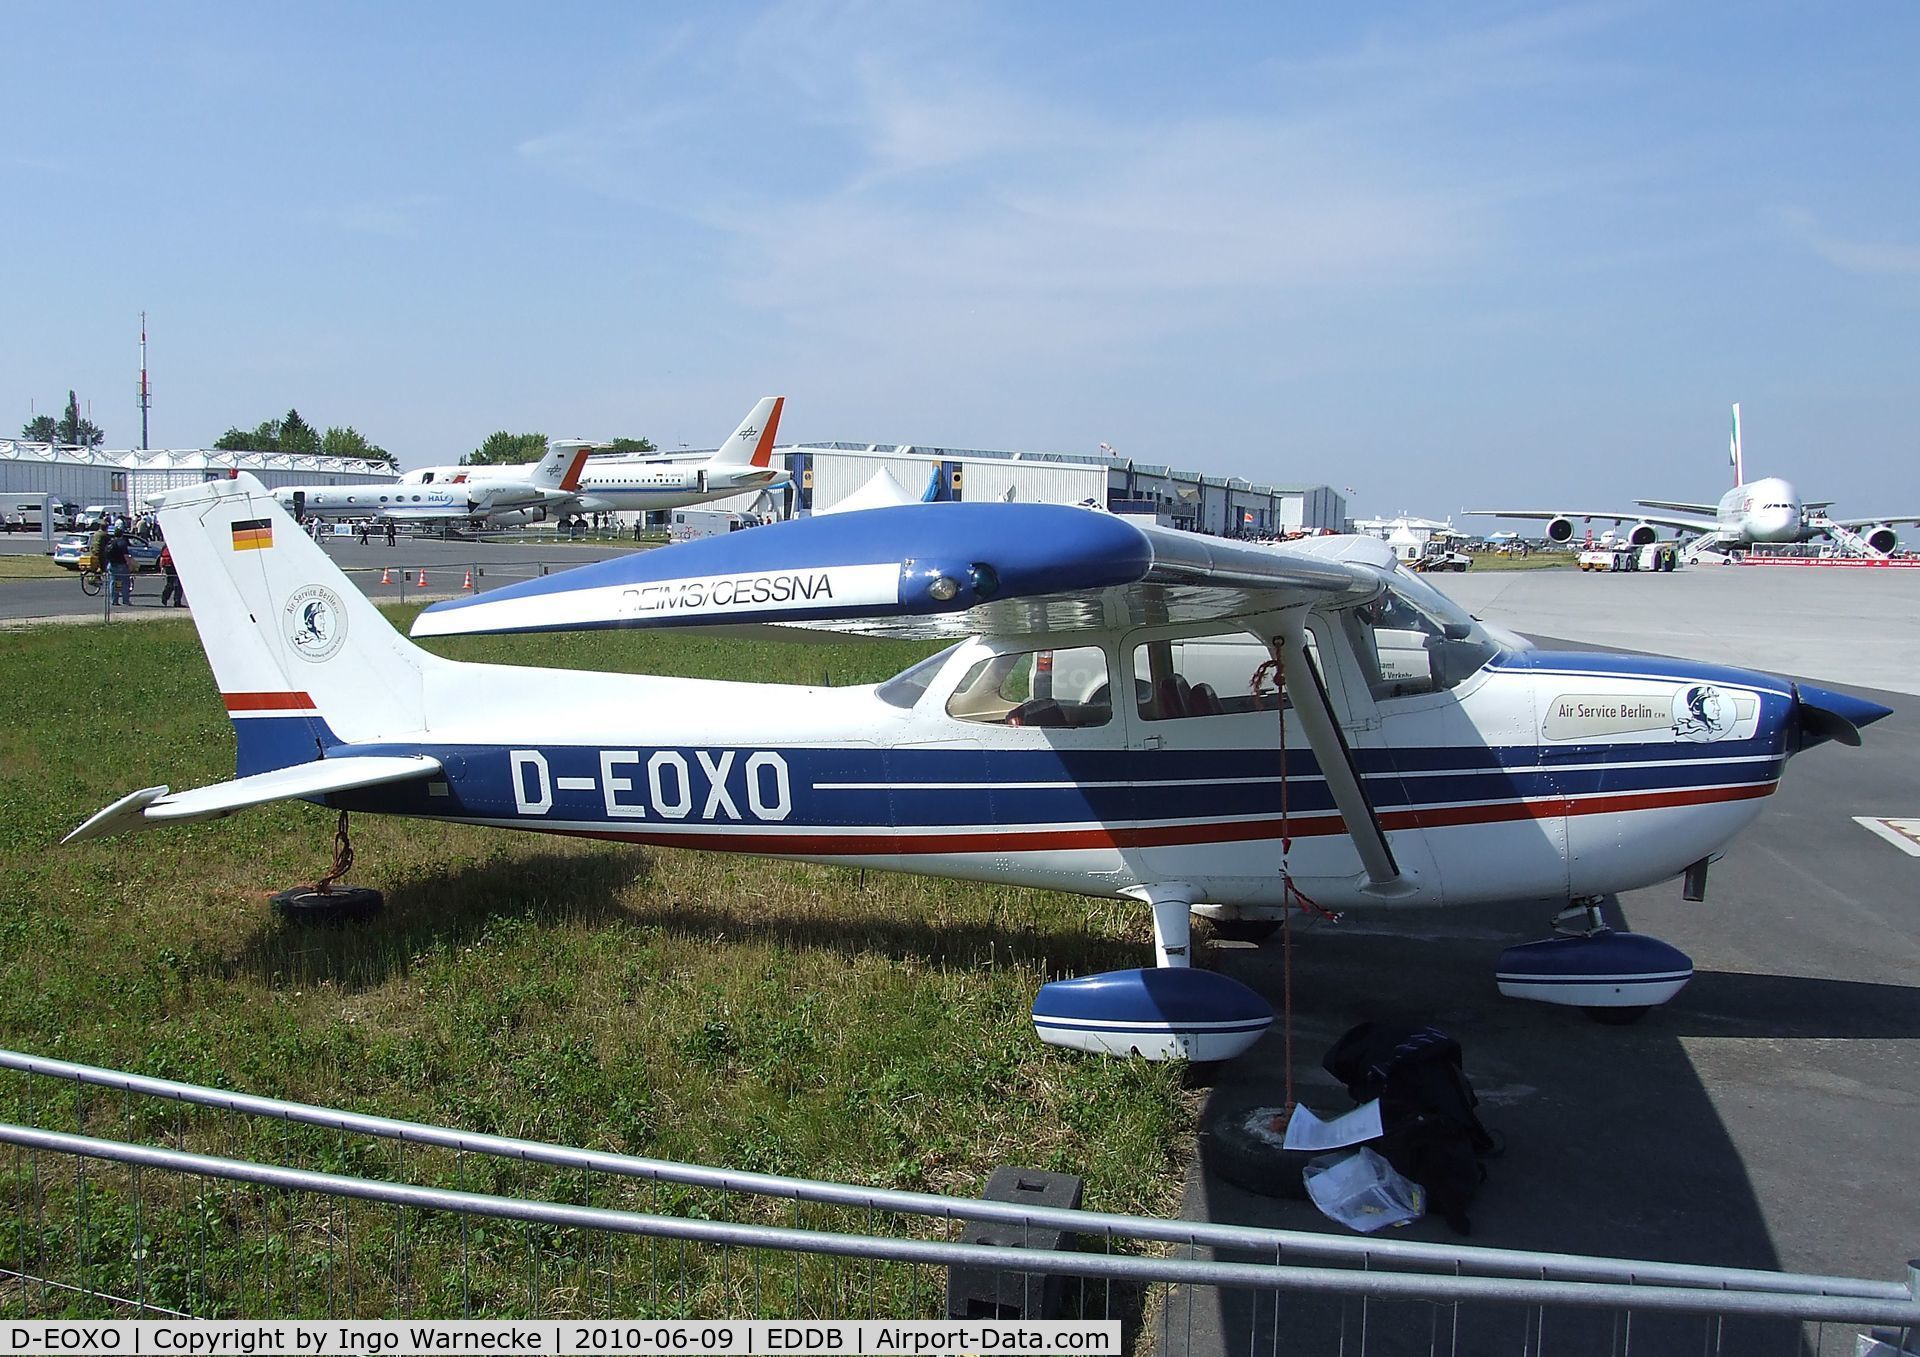 D-EOXO, Reims F172N Skyhawk C/N 1708, Cessna (Reims) F172N at ILA 2010, Berlin